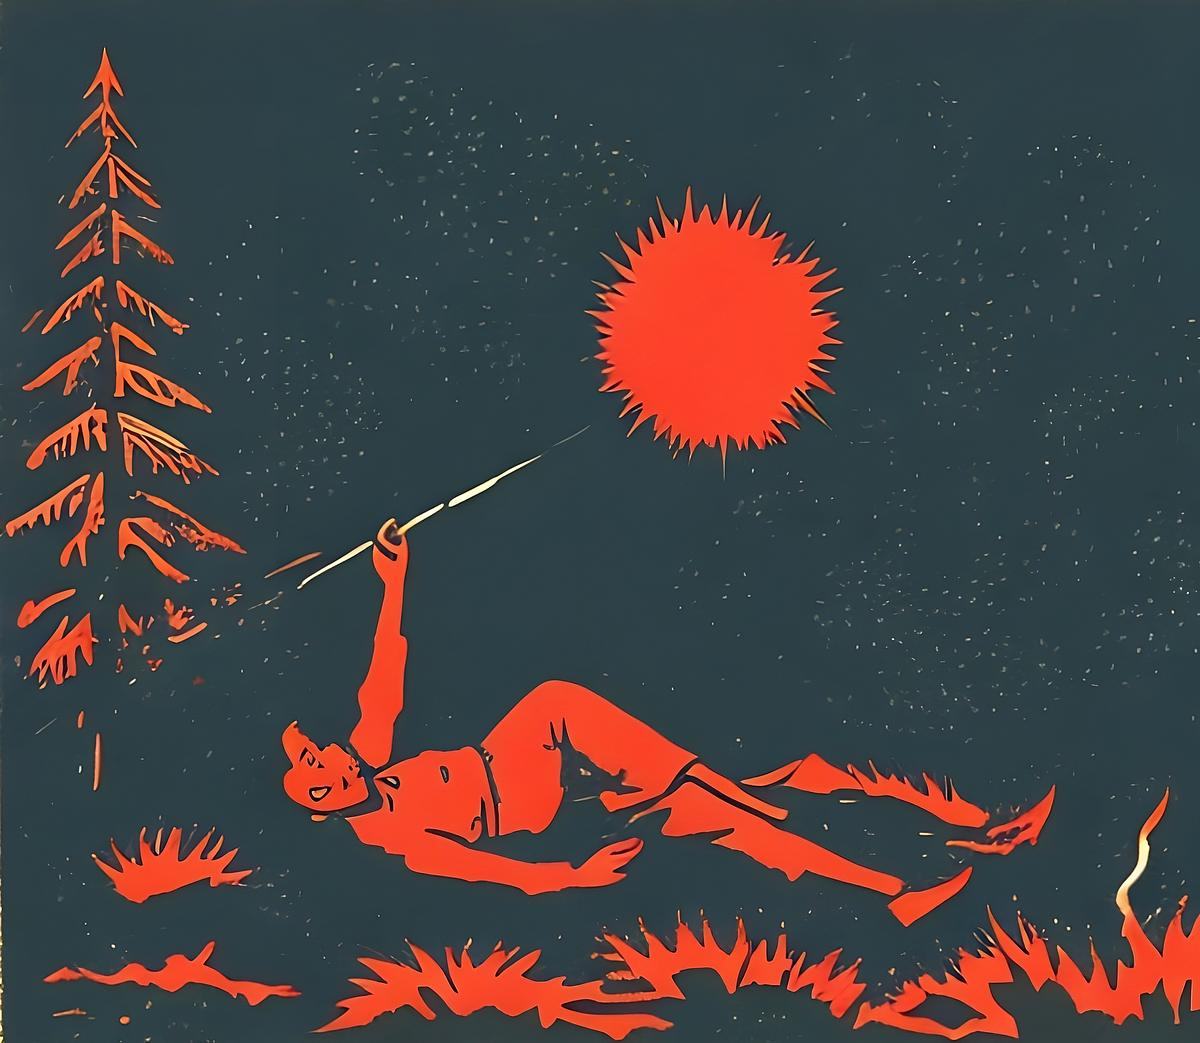 Титульное изображение для страницы события: красный рисунок на черном, человек лежит в лесу и направляет палку в сторону солнца